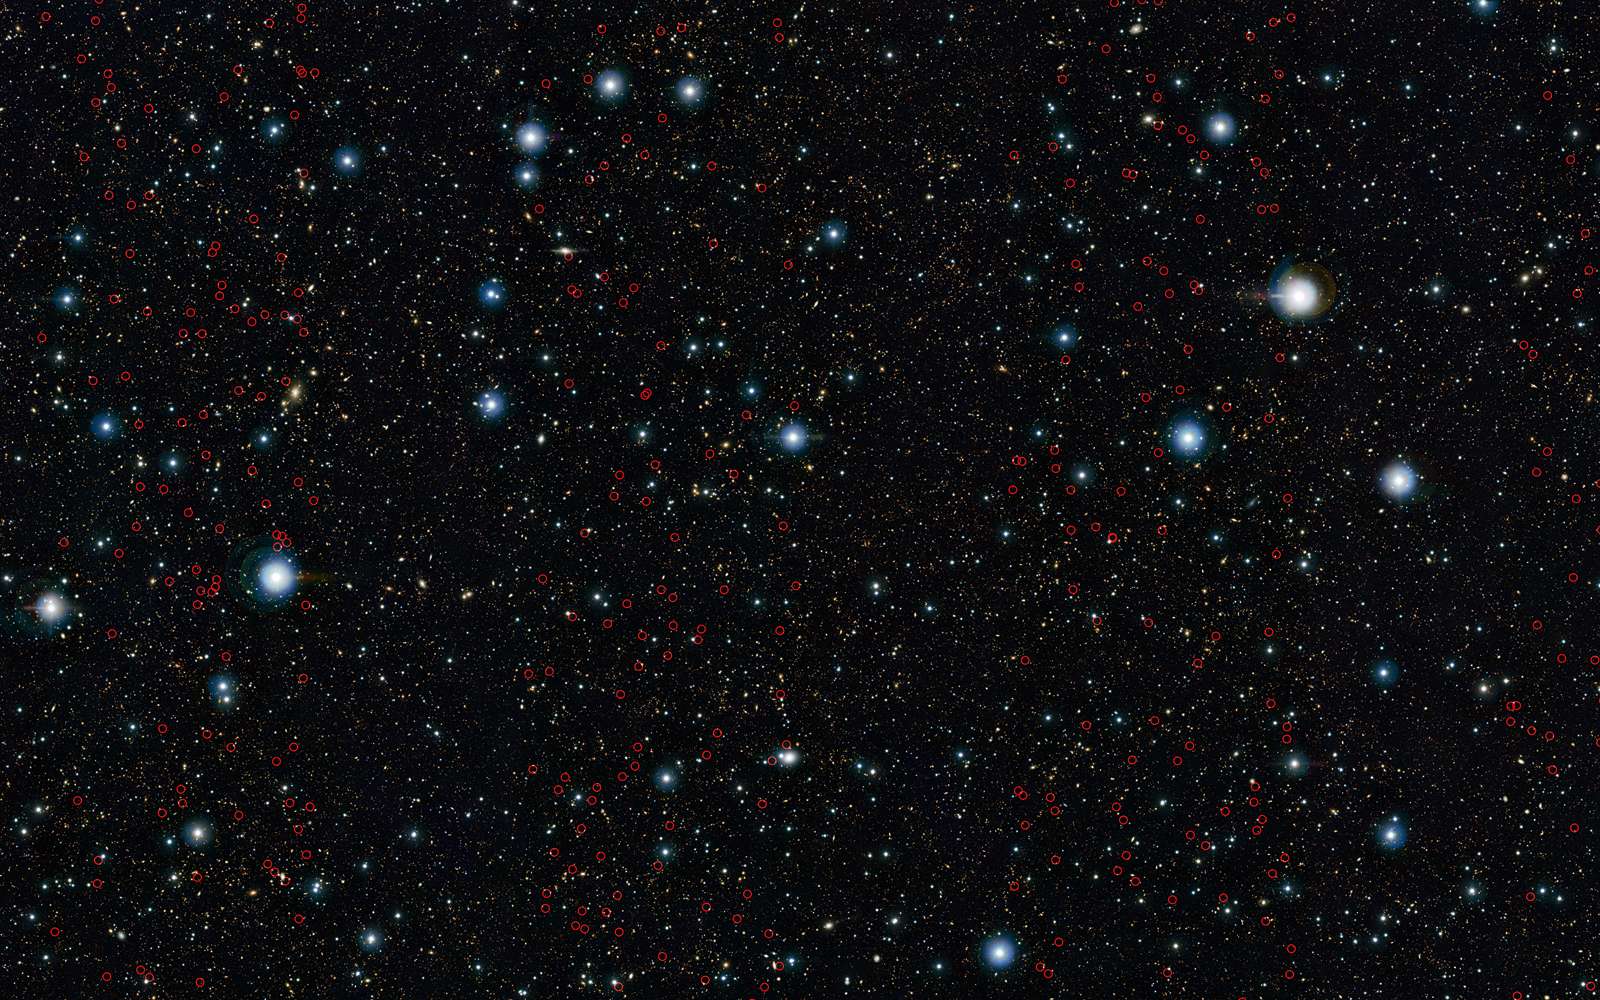 Vista a scruté un ensemble de galaxies massives longtemps demeurées inconnues bien qu’elles soient contemporaines de l’univers jeune. Sur cette image couvrant le champ d’observation d’UltraVista, chaque petit cercle rouge indique les galaxies massives nouvellement découvertes. © Eso, UltraVista team, TERAPIX, CNRS, INSU, CASU